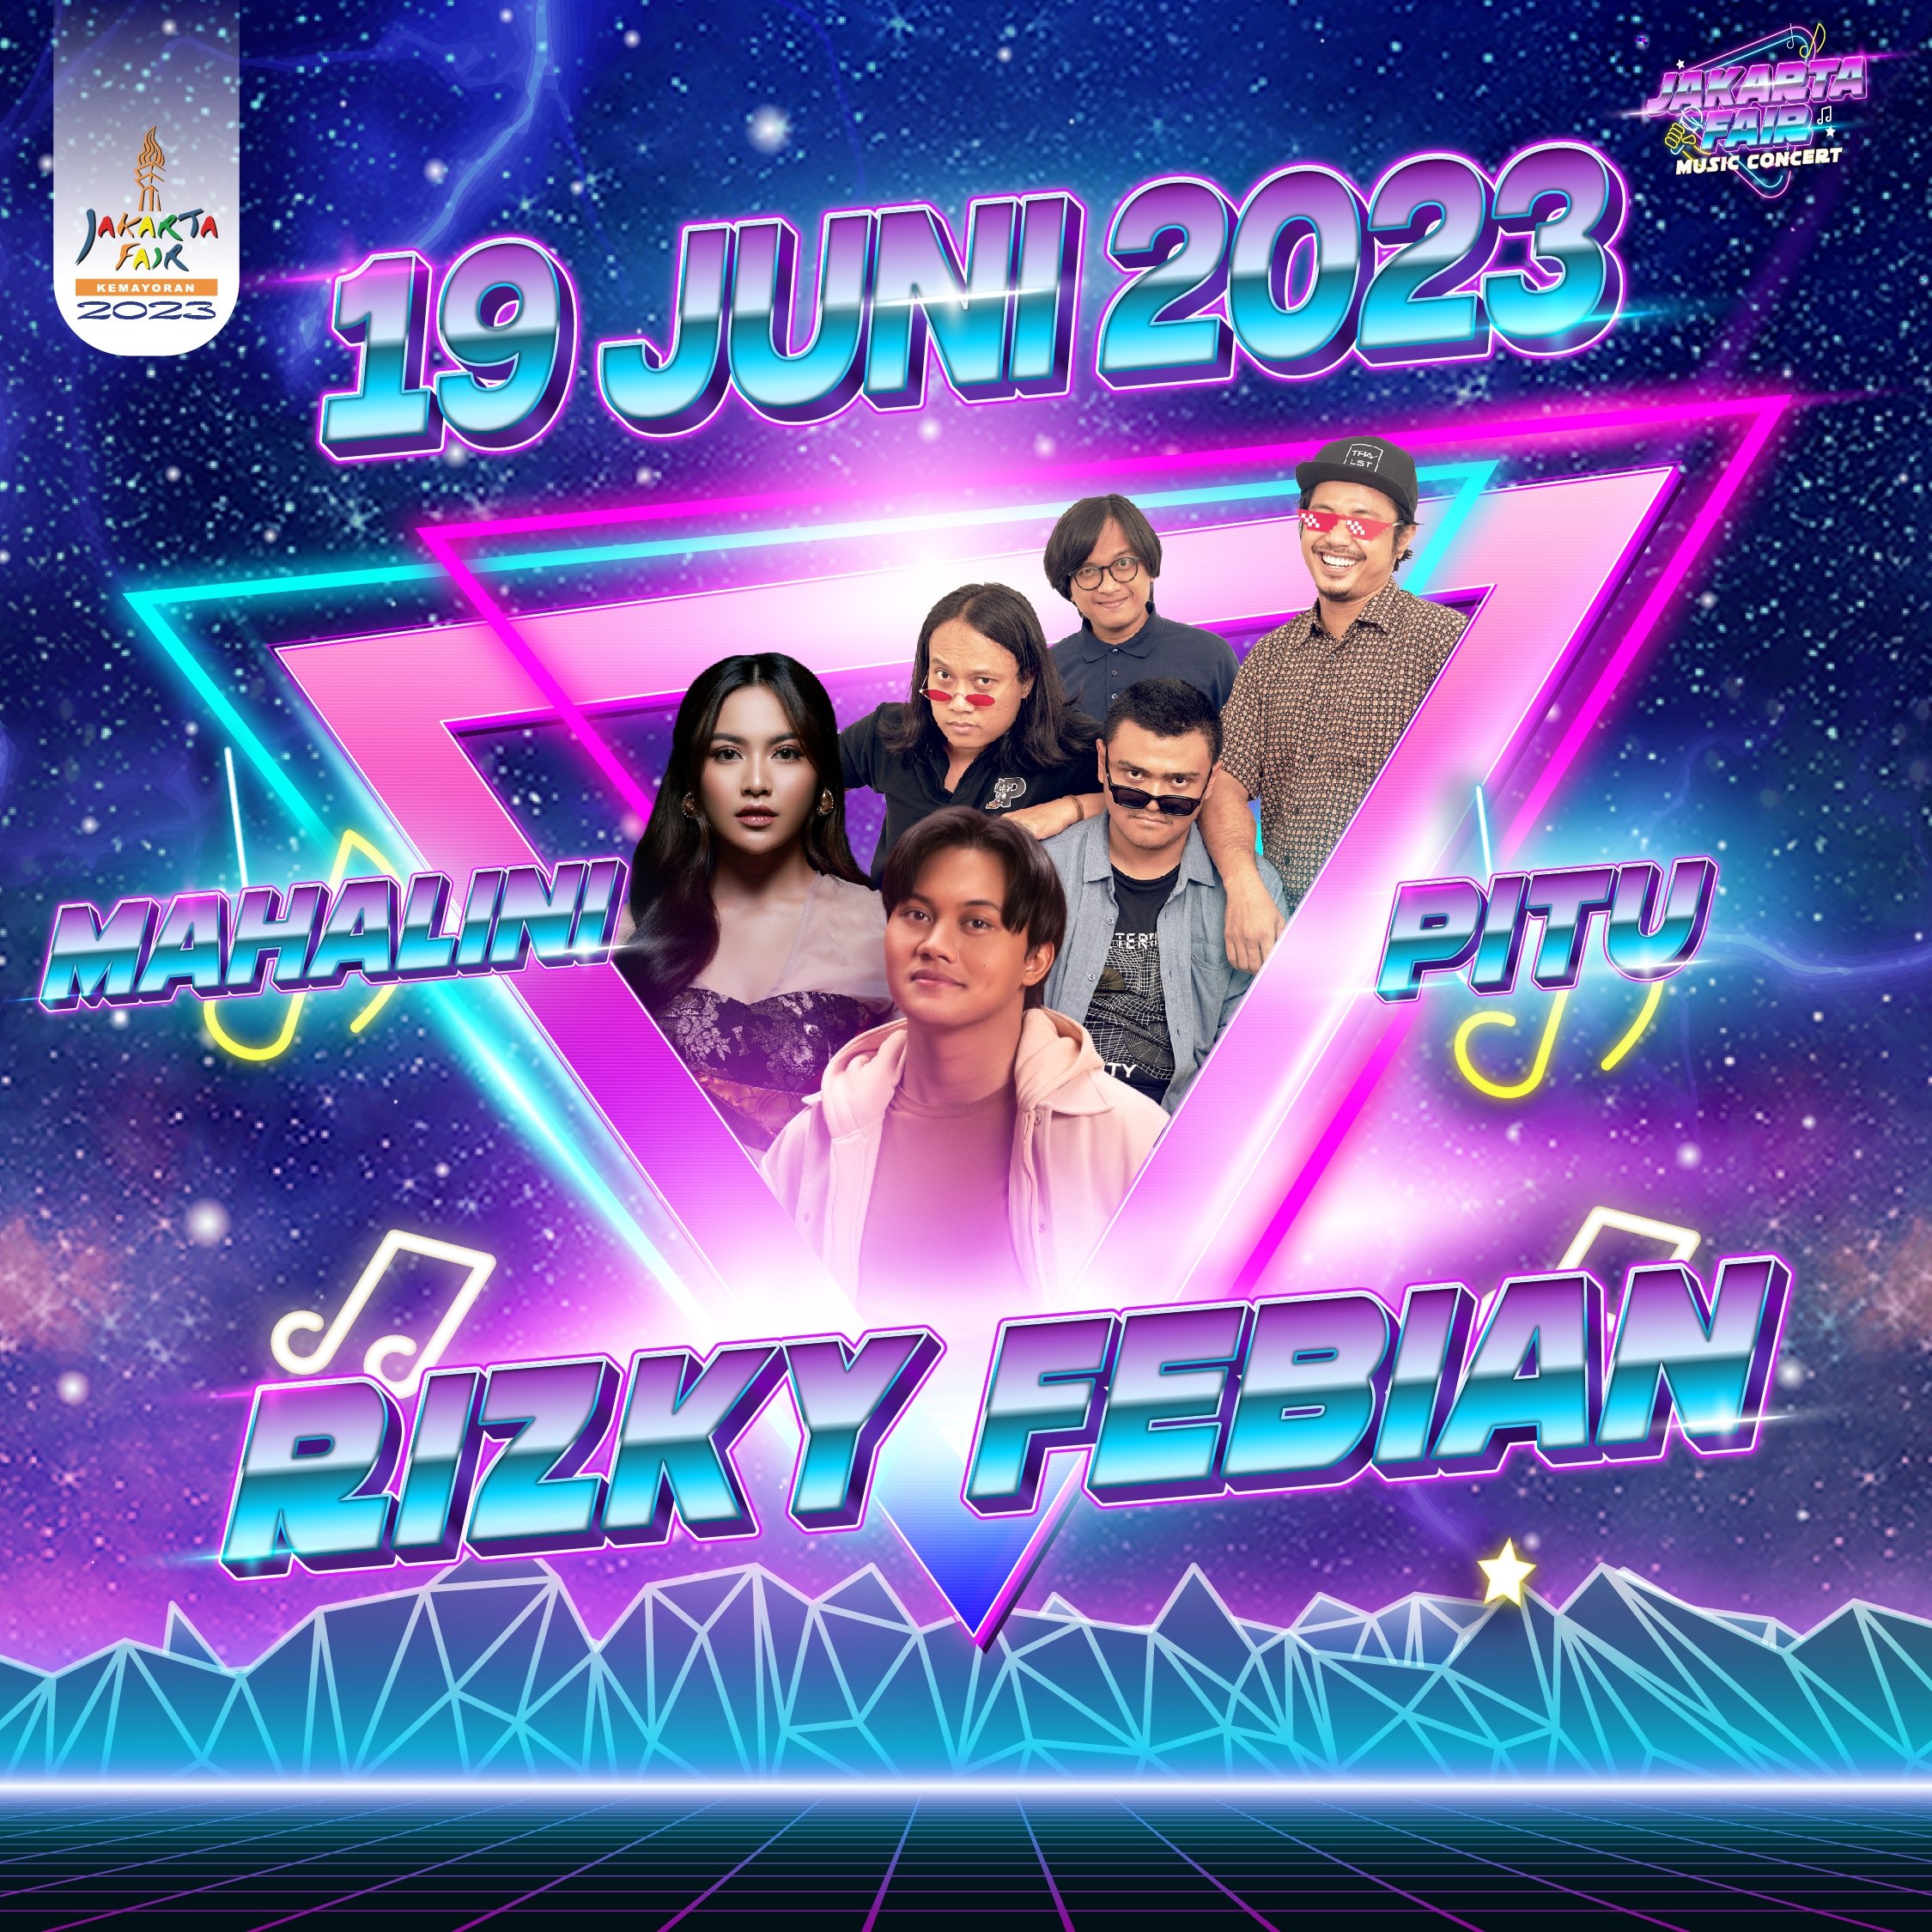 Mahalini, Rizky Febian dan Band Pitu Akan Memeriahkan Jakarta Fair 2023 Malam Ini, Cek Tiket dan Cara Belinya!